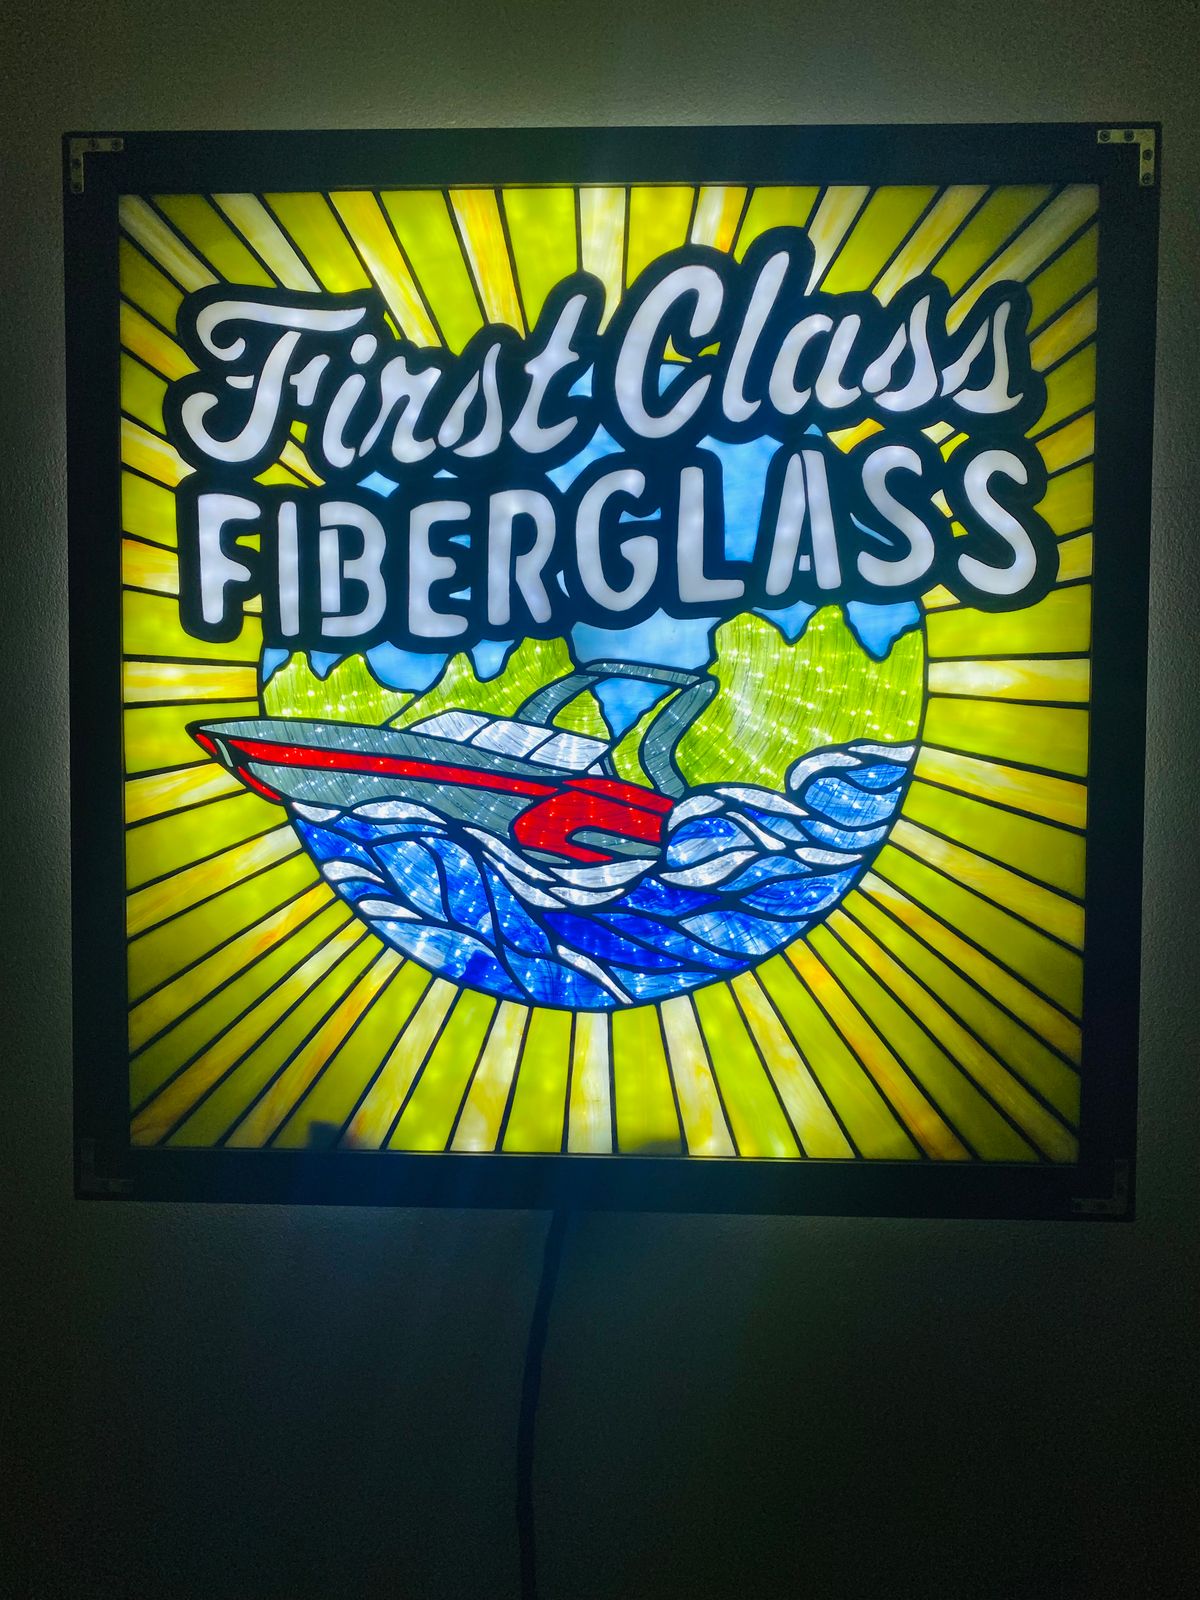 First Class Fiberglass LLC